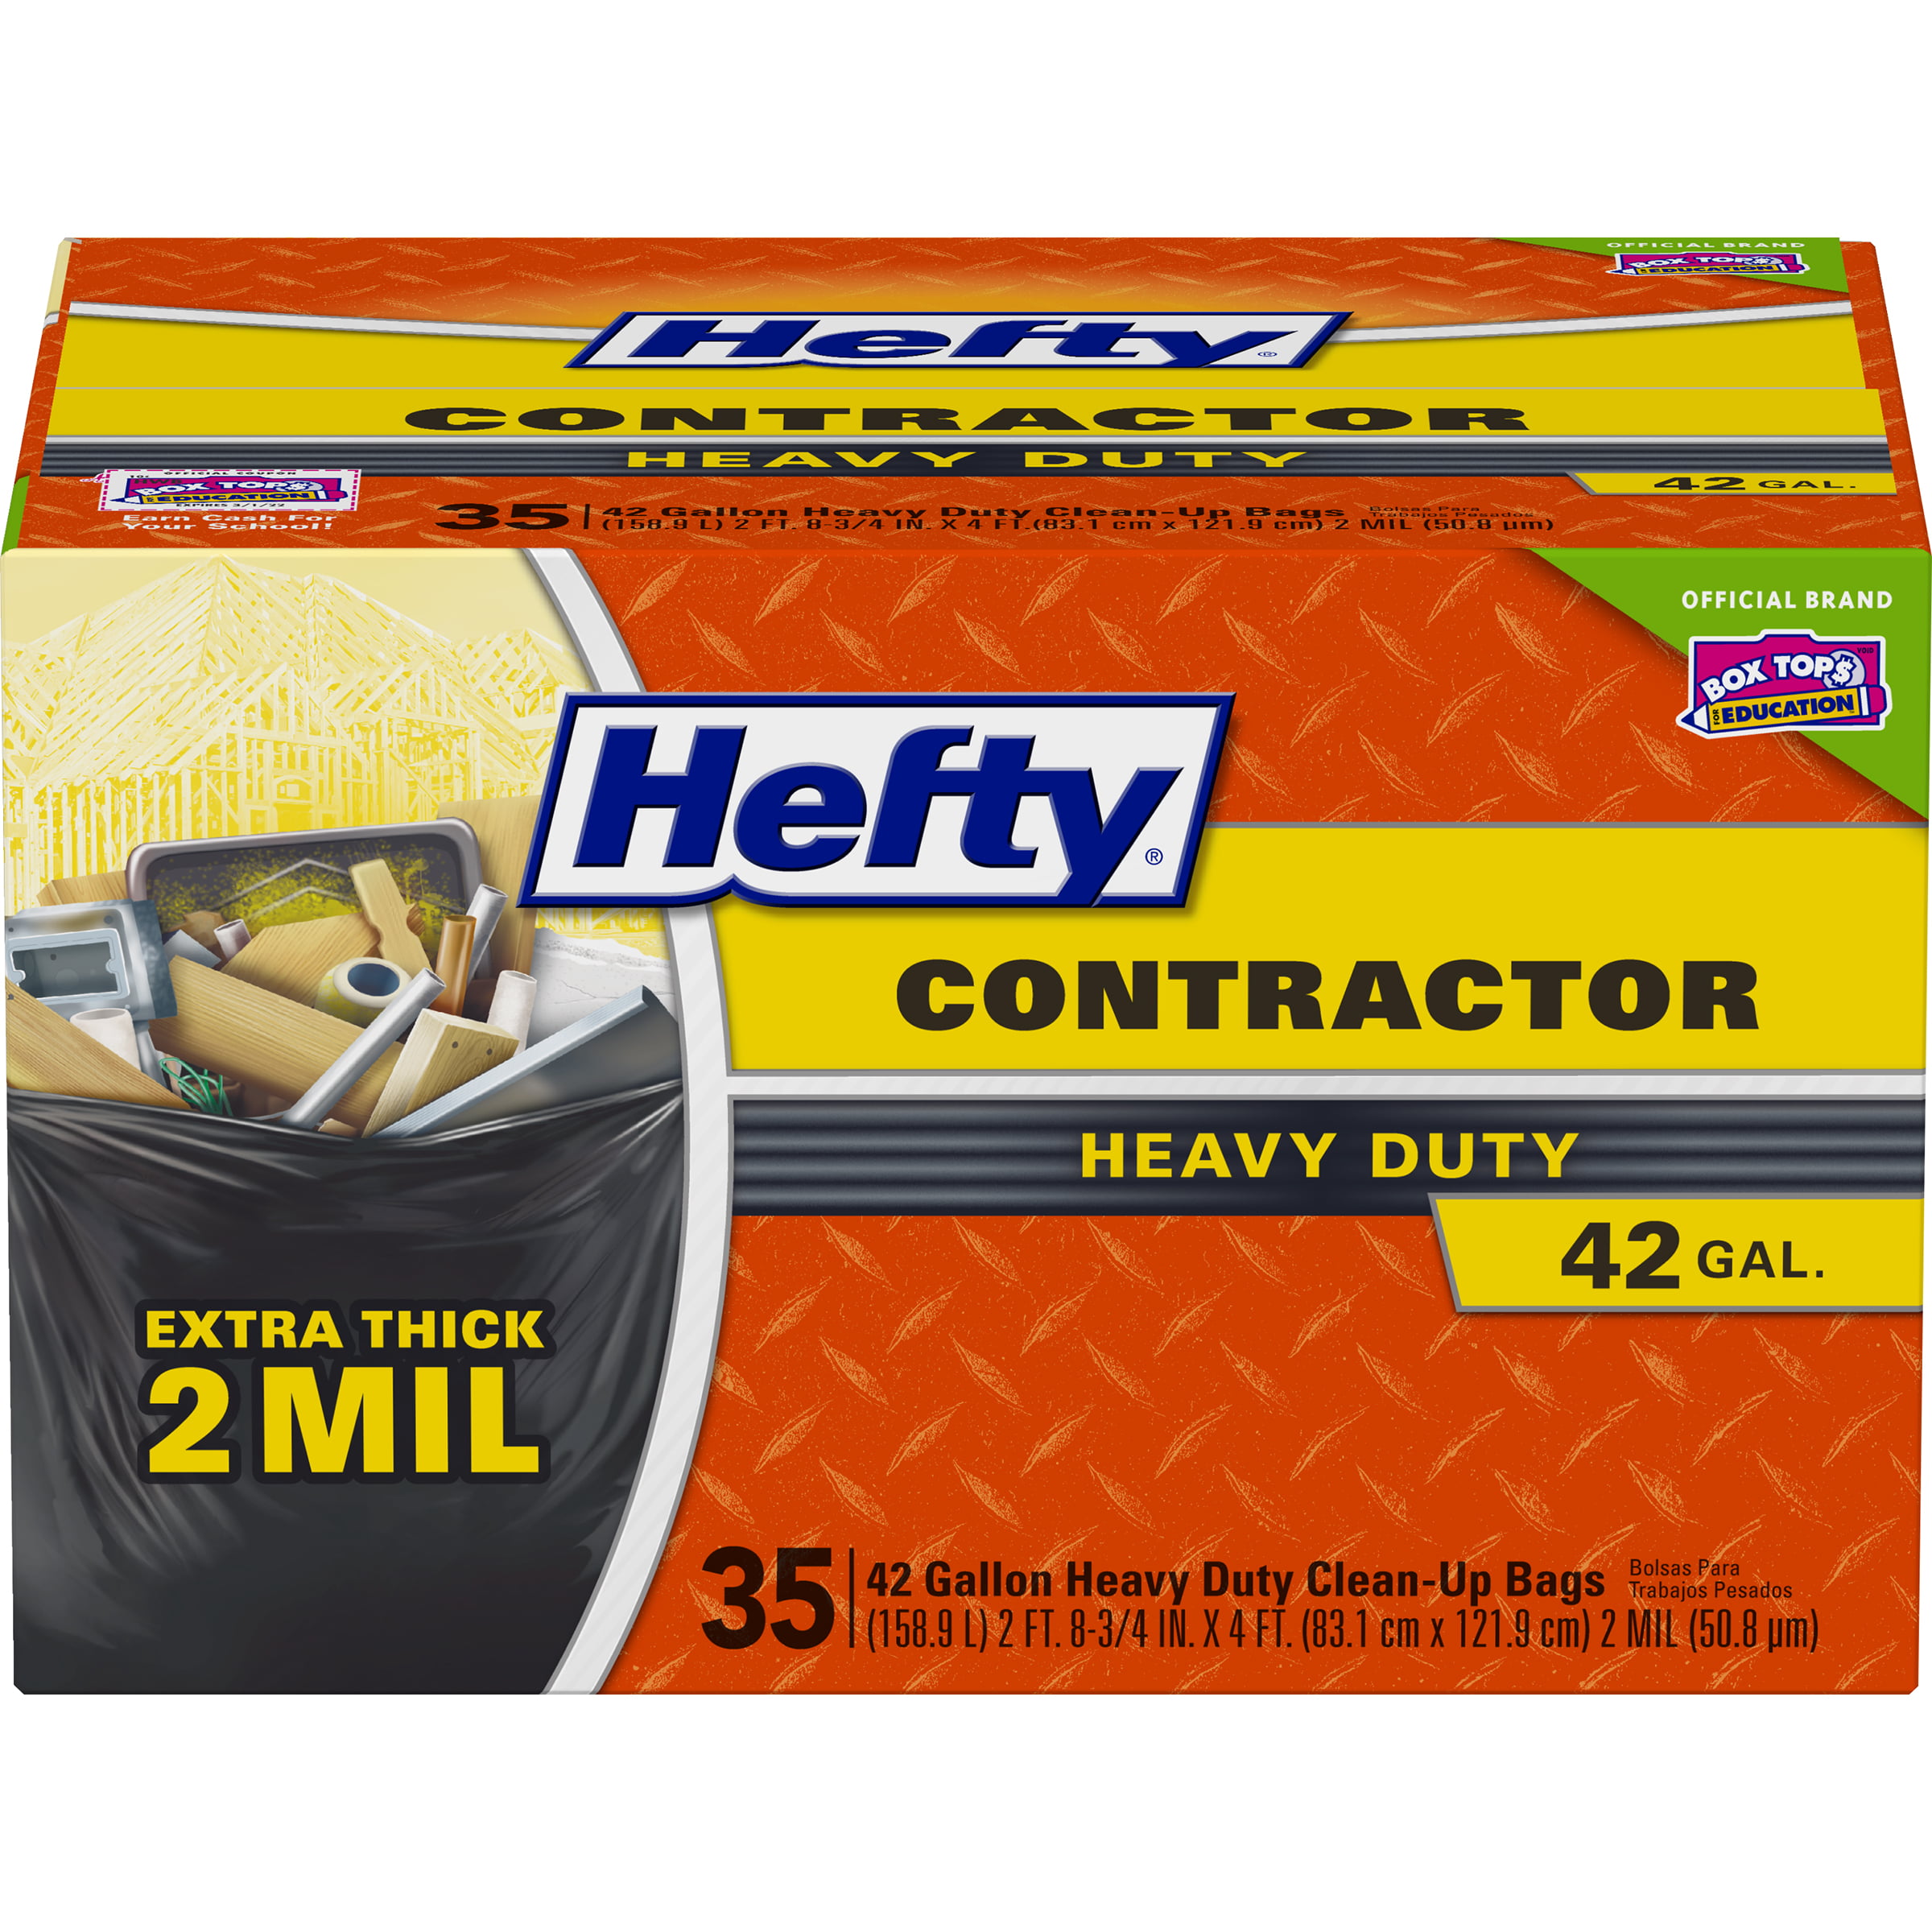 Hefty Heavy Duty Contractor Trash Bags, 42 Gallon, 35 Count - Walmart.com.